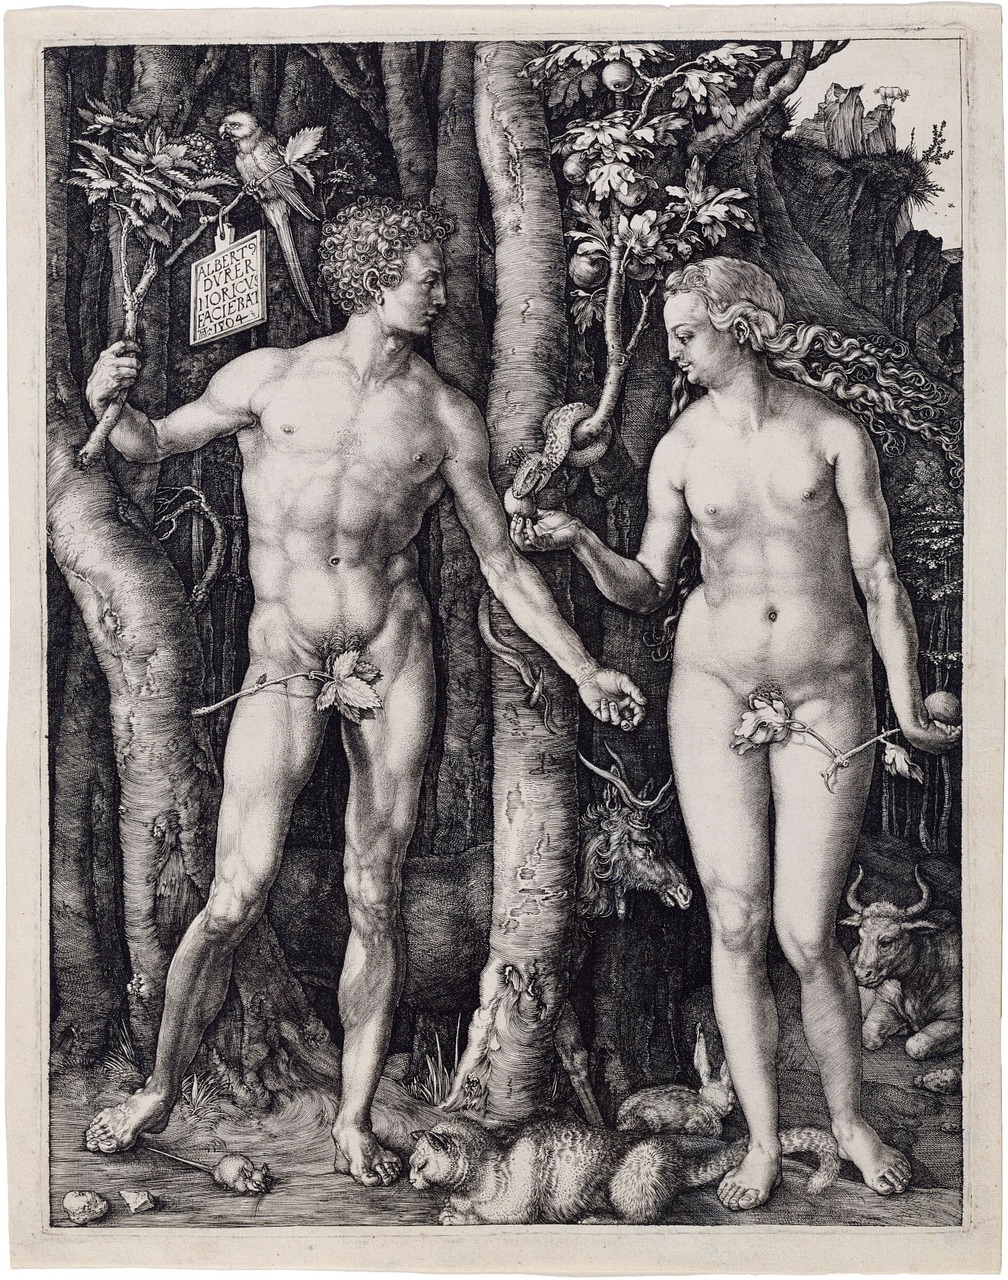 Adomas Ir Vakaras, Religija, Albrecht Dürer, 1504, Krikščionybė, Katalikų, Protestantas, Tikėjimas, Meno Kūriniai, Menas